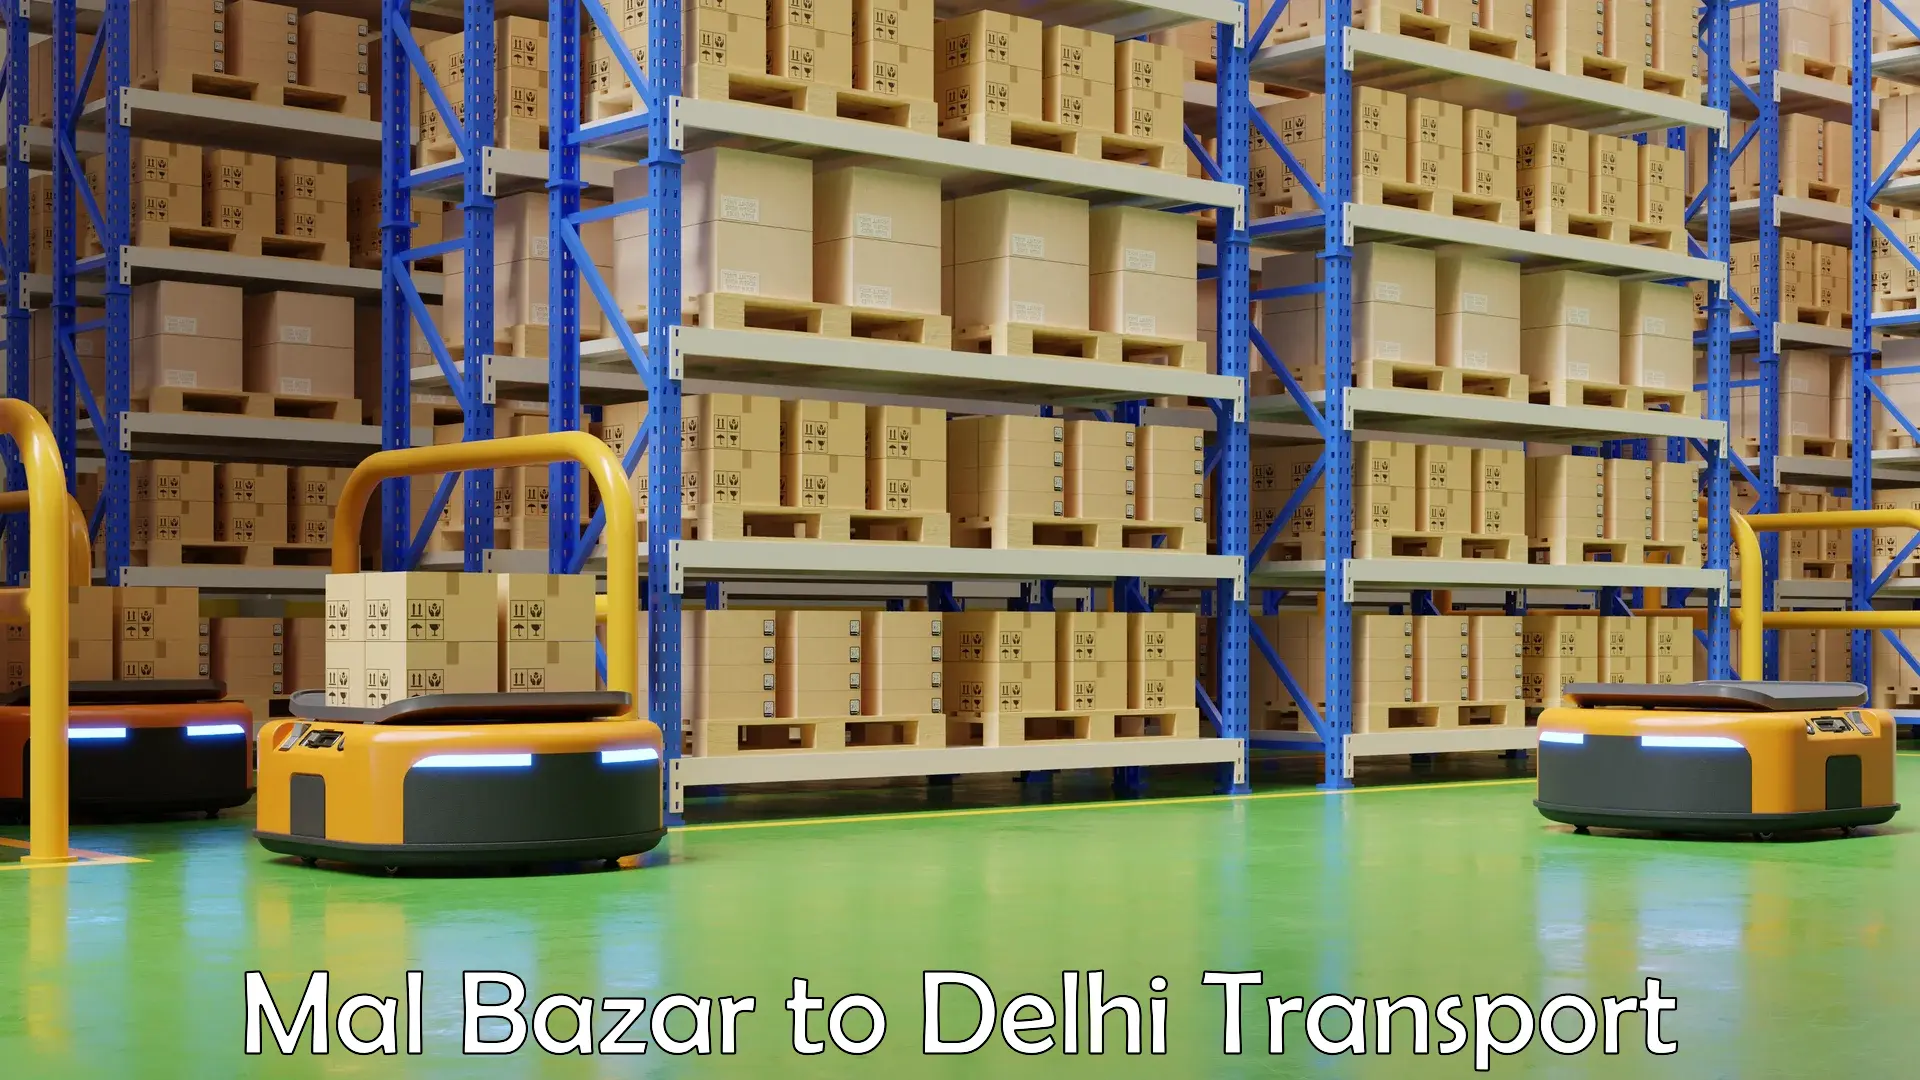 Furniture transport service Mal Bazar to IIT Delhi